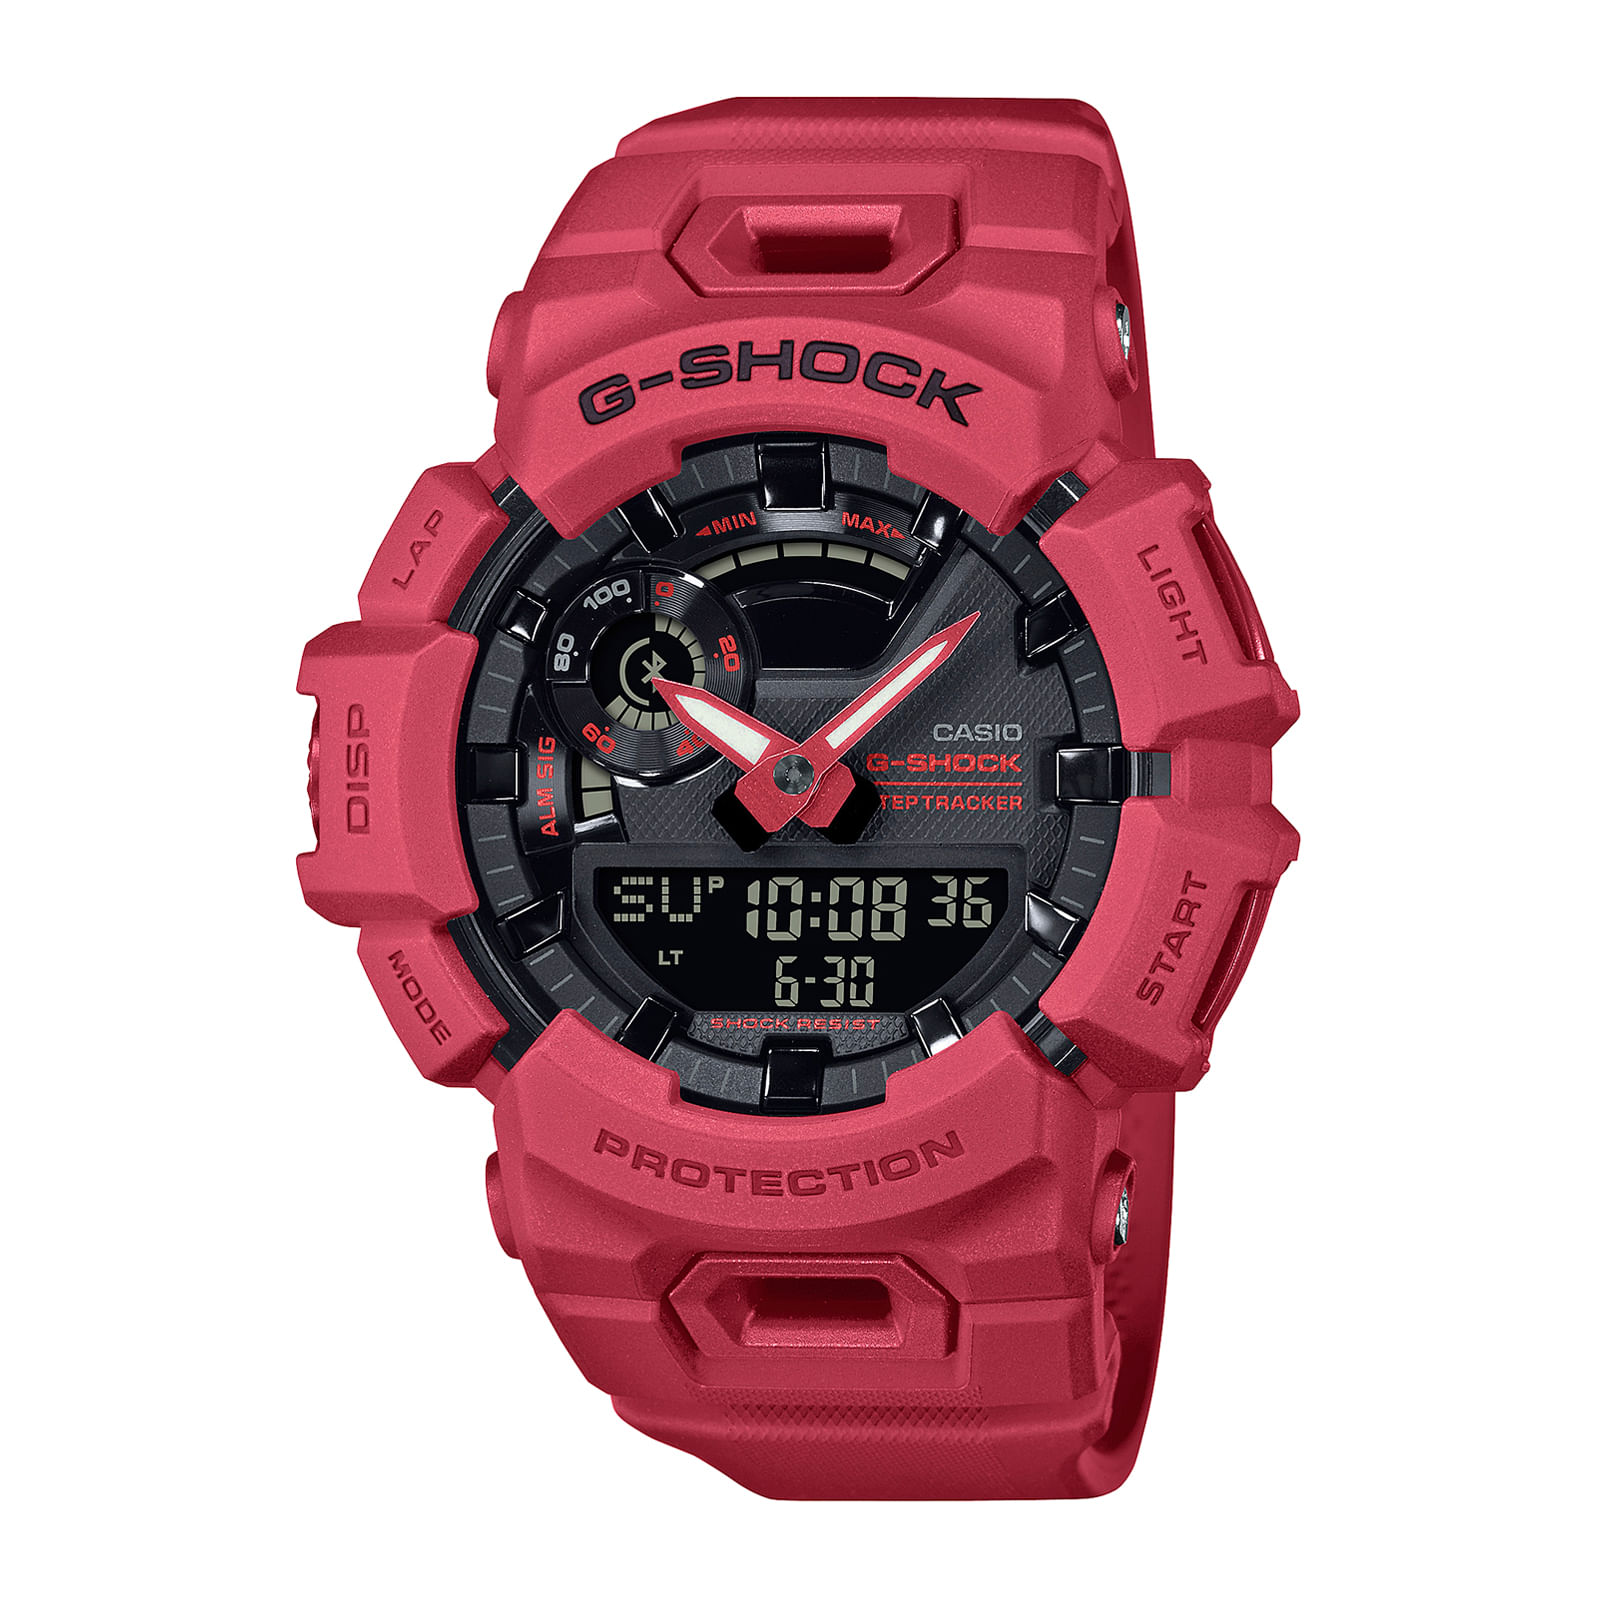 Reloj G-SHOCK GBA-900RD-4A Resina Hombre Rojo - Btime